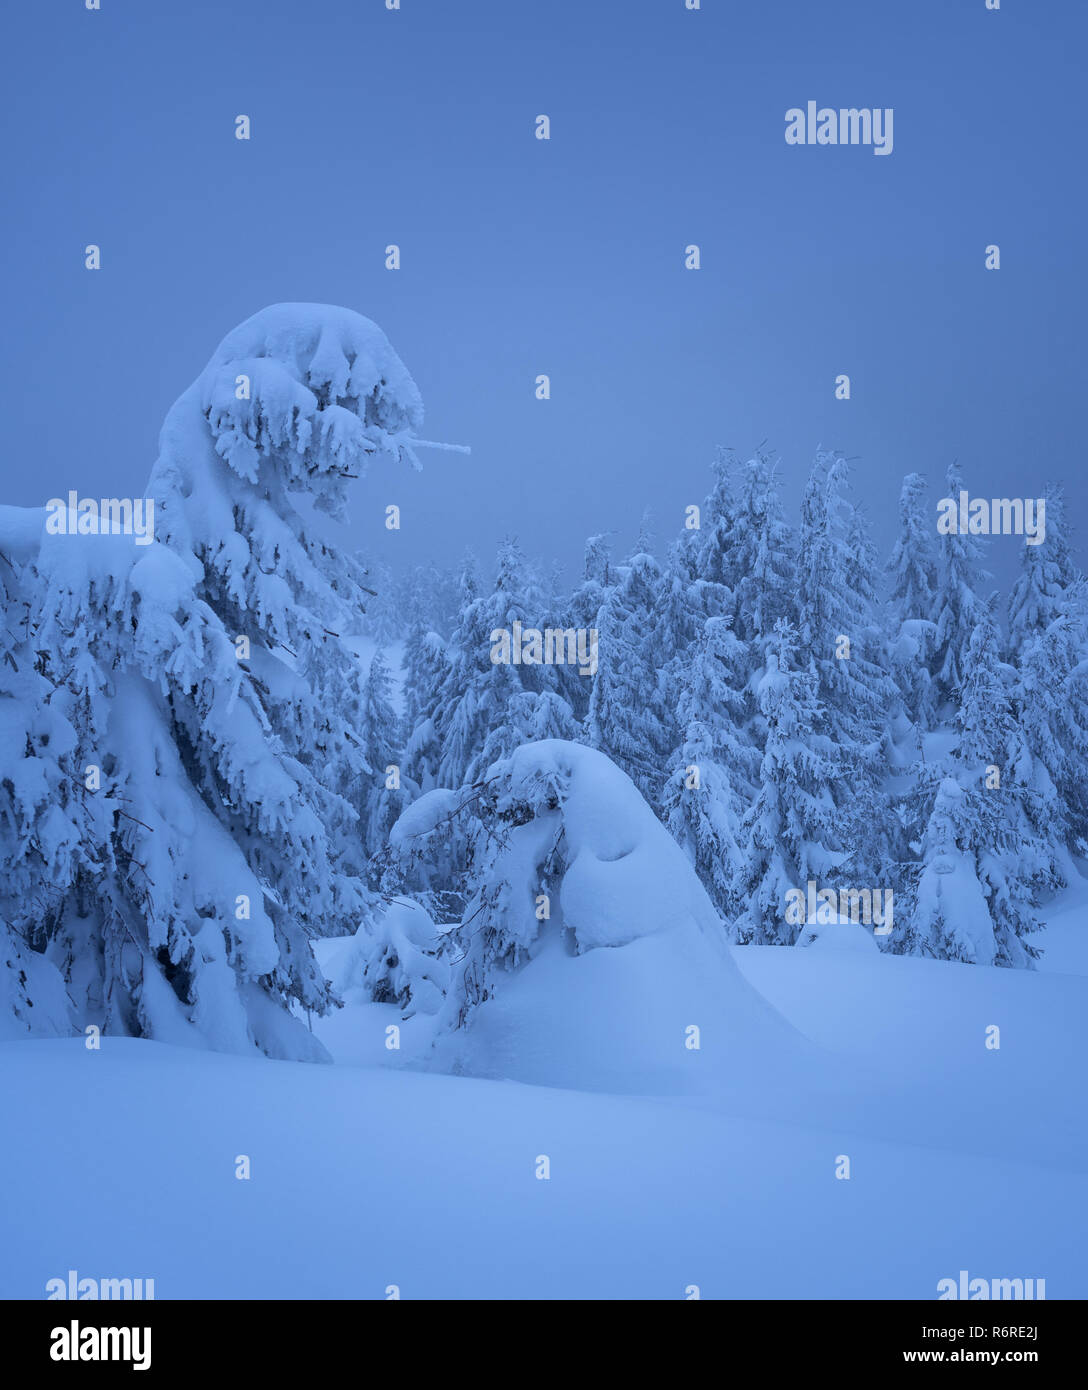 Wunderbare winter Blick mit Schneeverwehungen im Fichtenwald. Bäume mit Schnee bedeckt. Dusky Szene in Blau Stockfoto